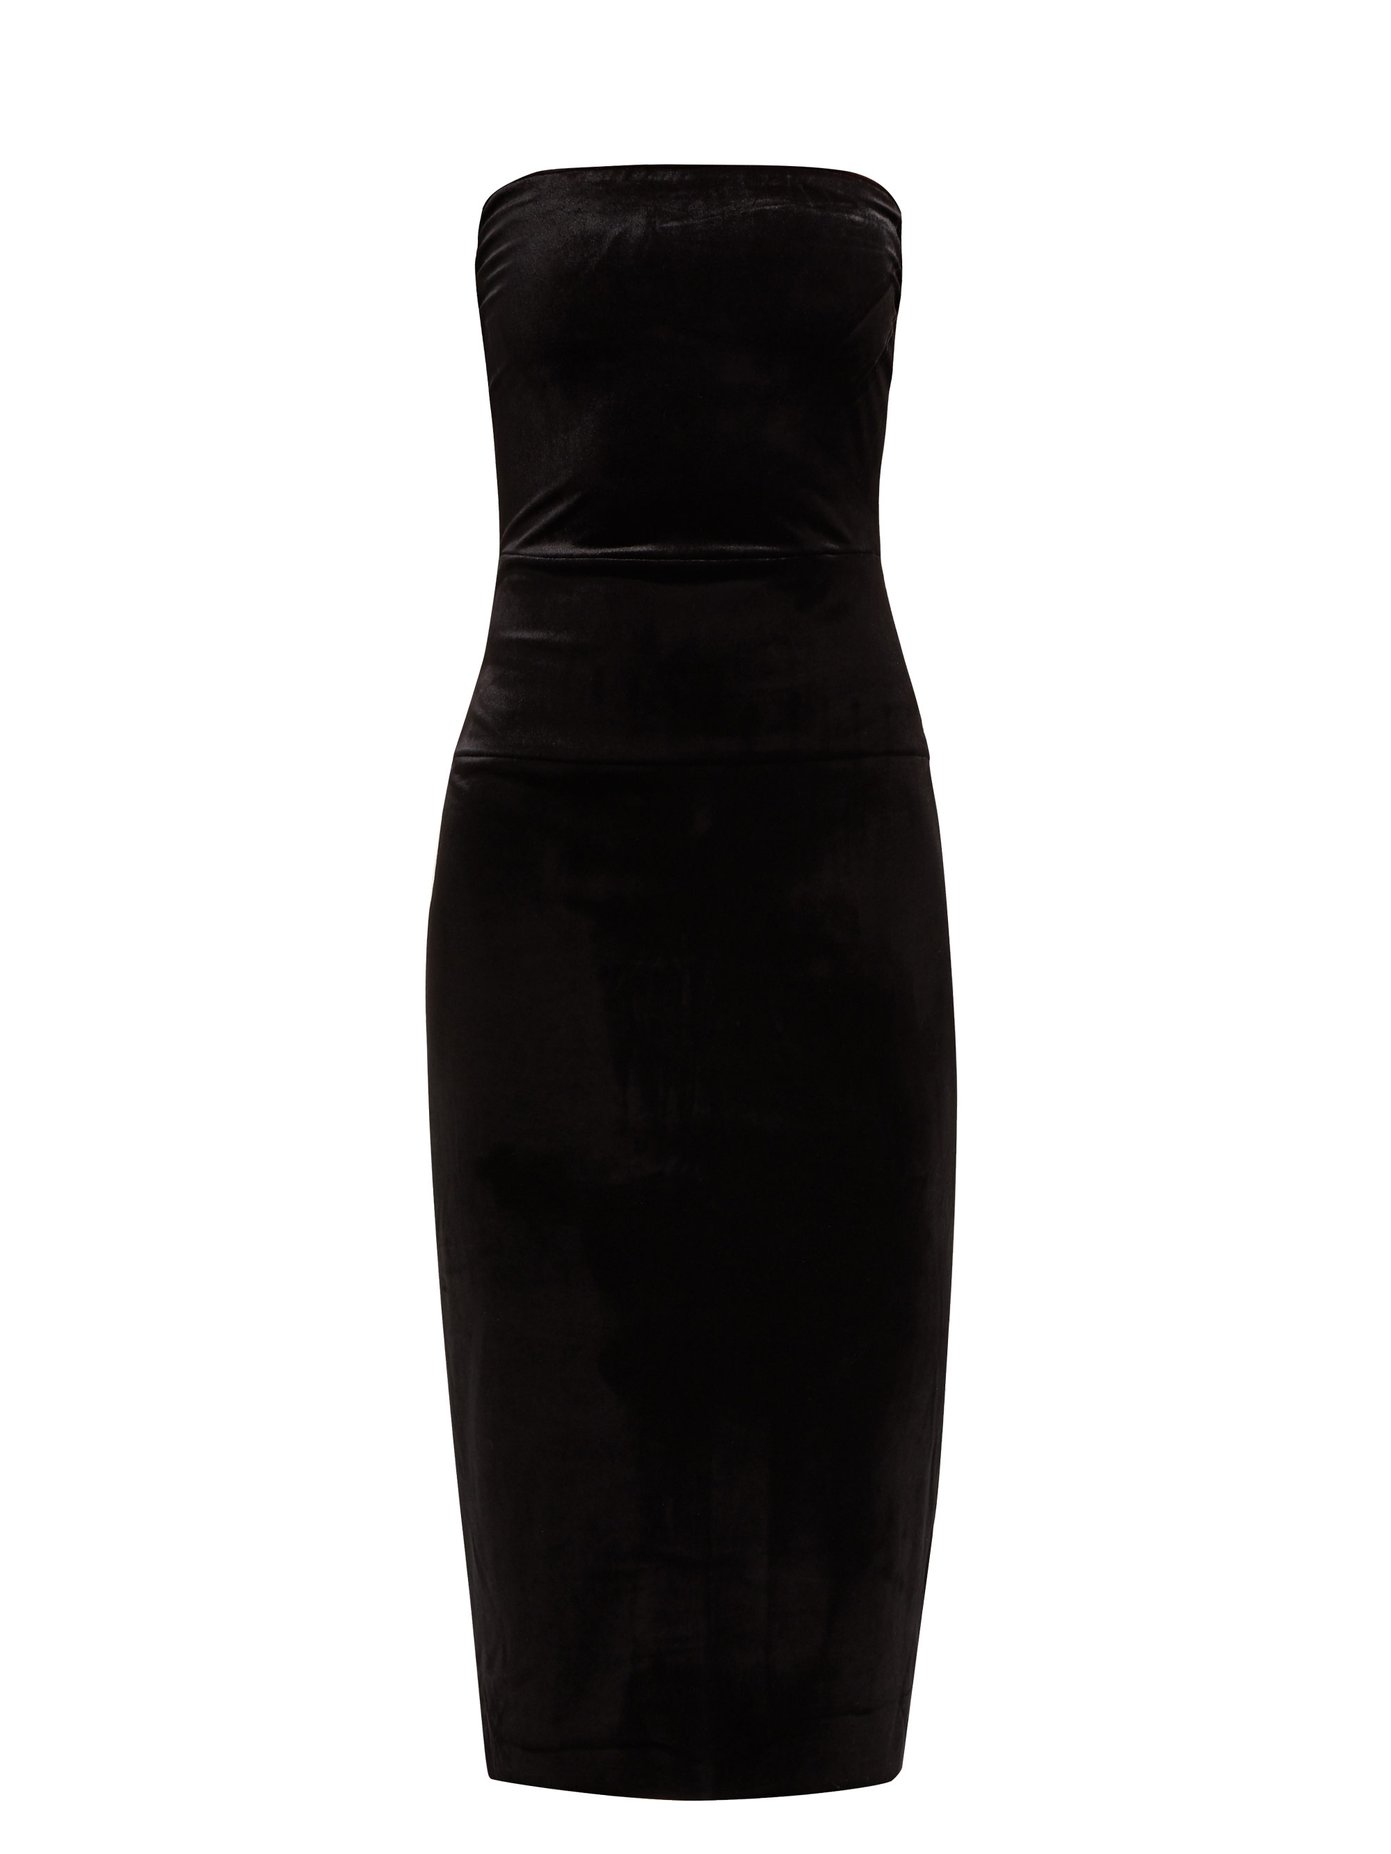 black strapless dress midi